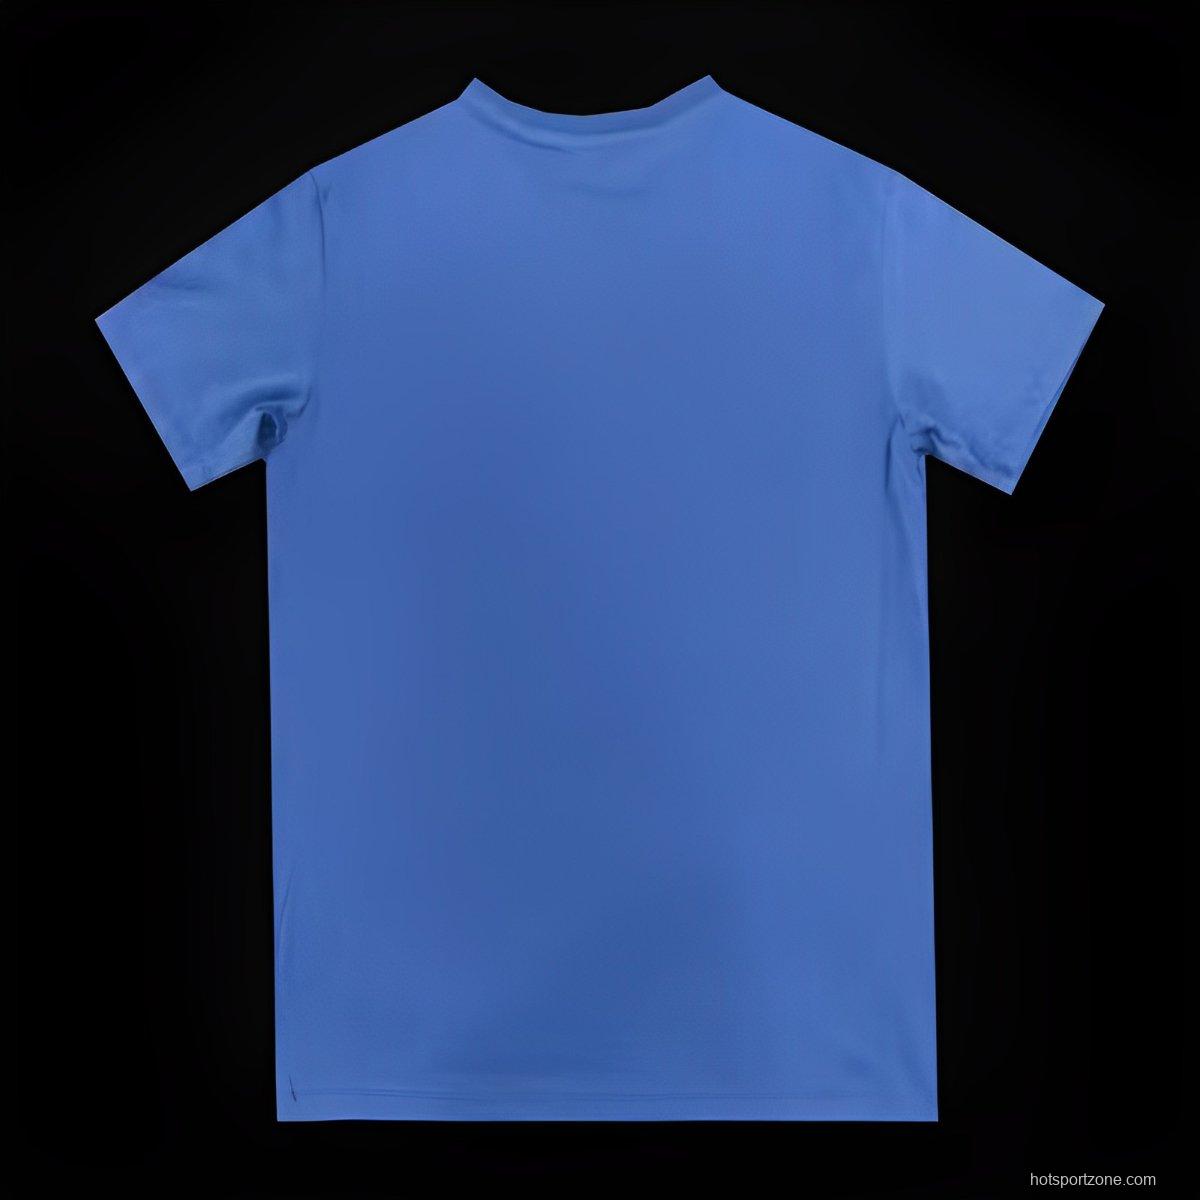 23/24 Inter Milan CAMPIONI D'ITALIA Blue T-Shirts